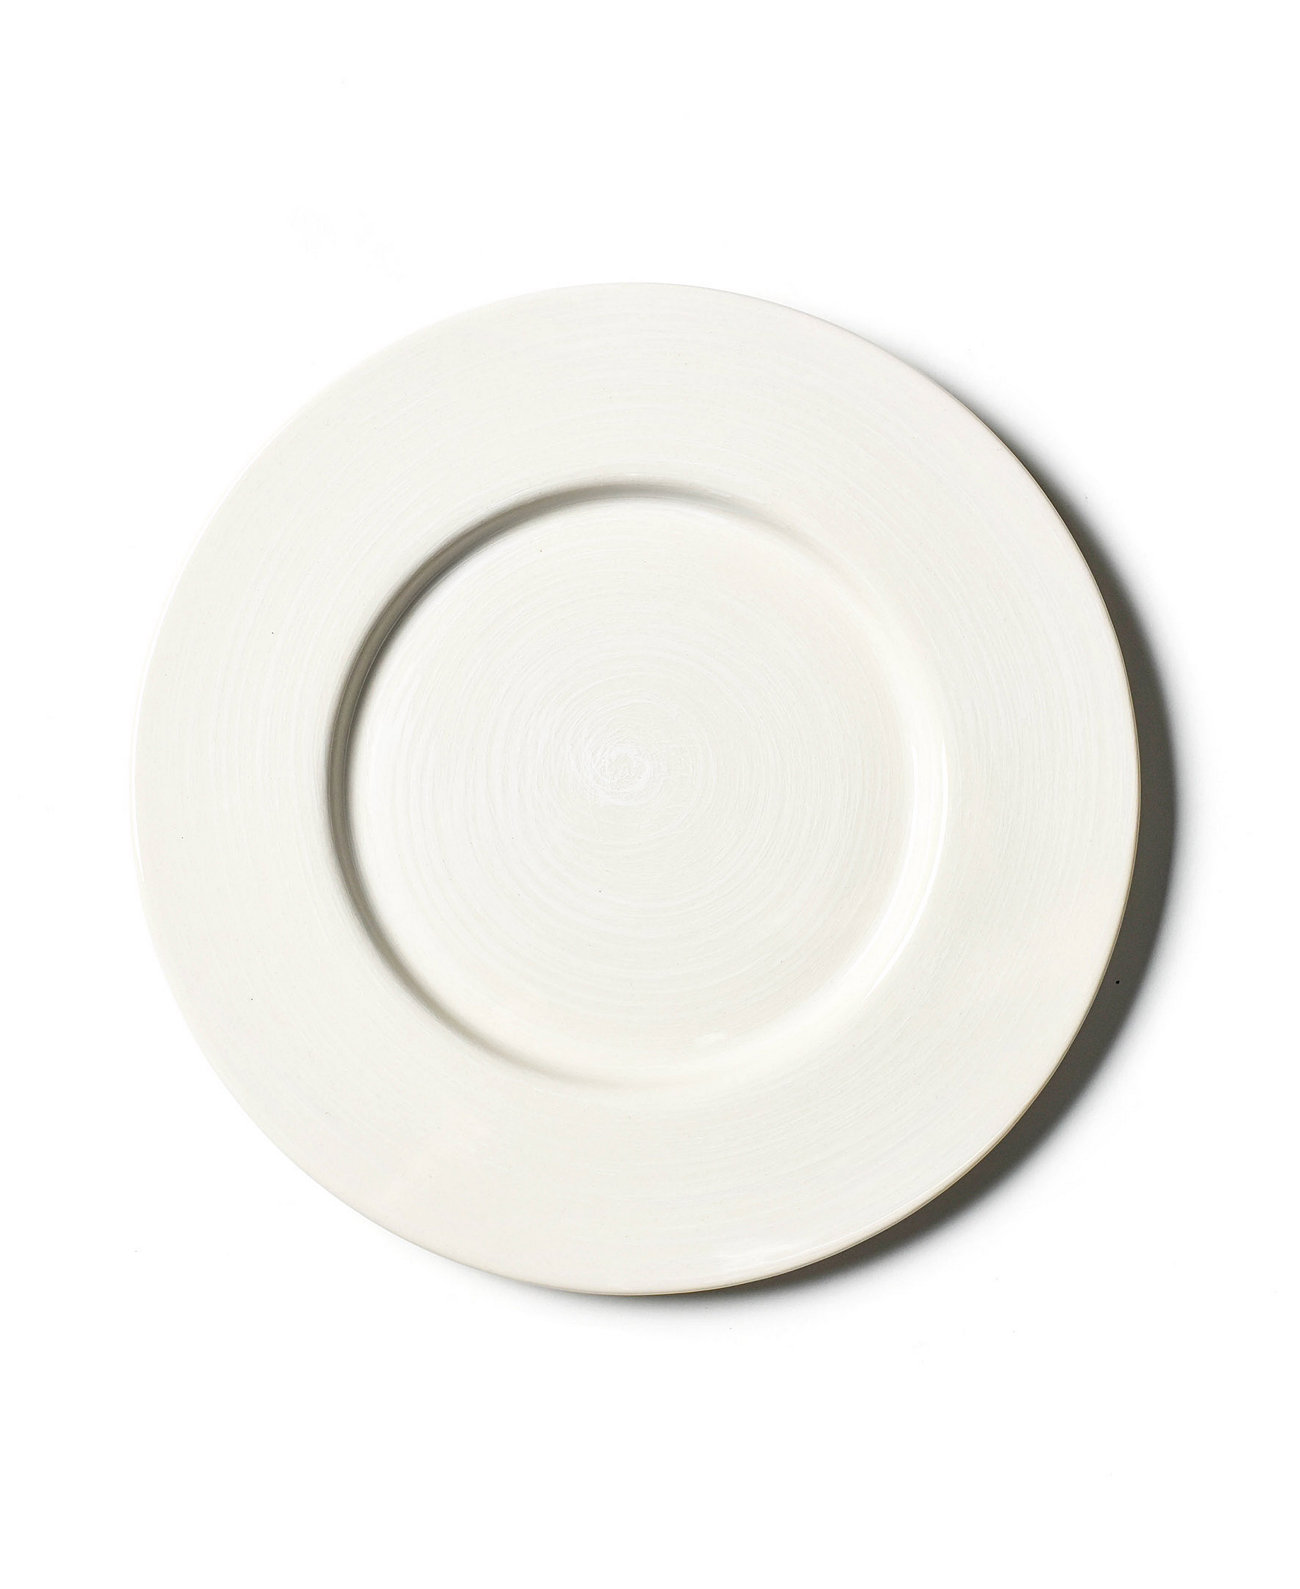 Фирменная обеденная тарелка с белой каймой Coton Colors